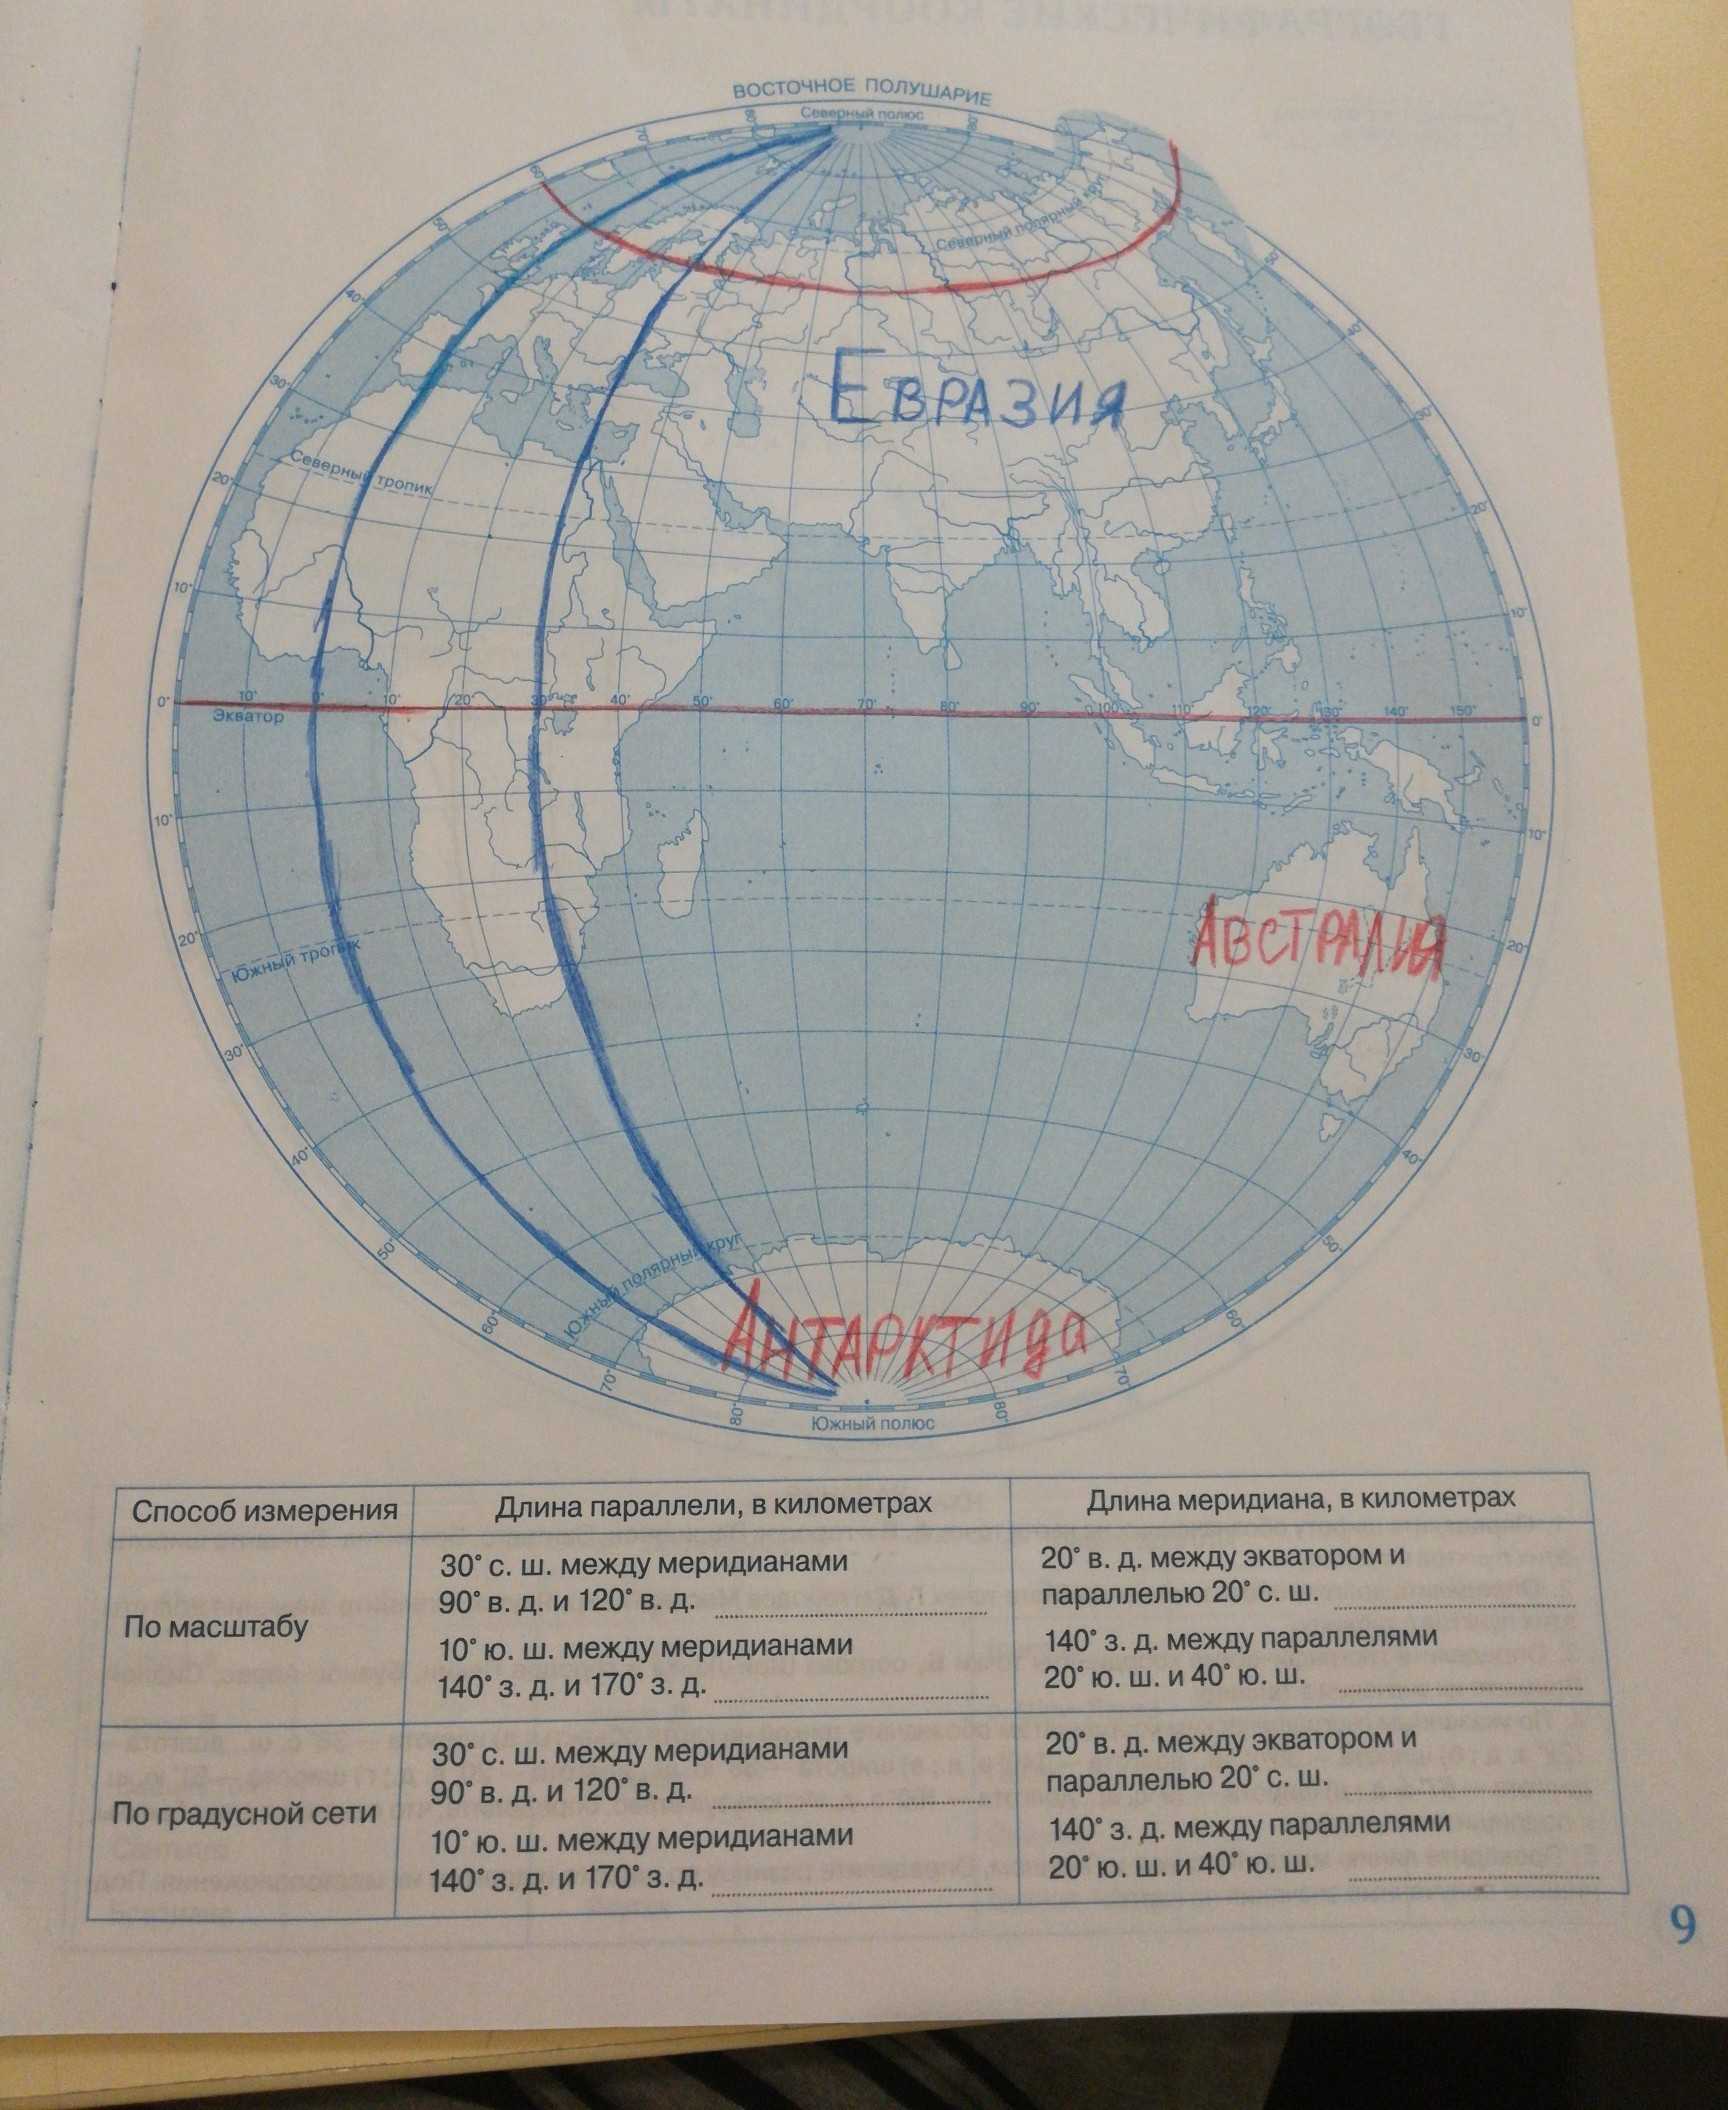 Меридиан 50 в д. Контурная карта географические координаты. Параллели на контурной карте. Карта с географическими координатами. Географические координаты контурная карта 6 класс.